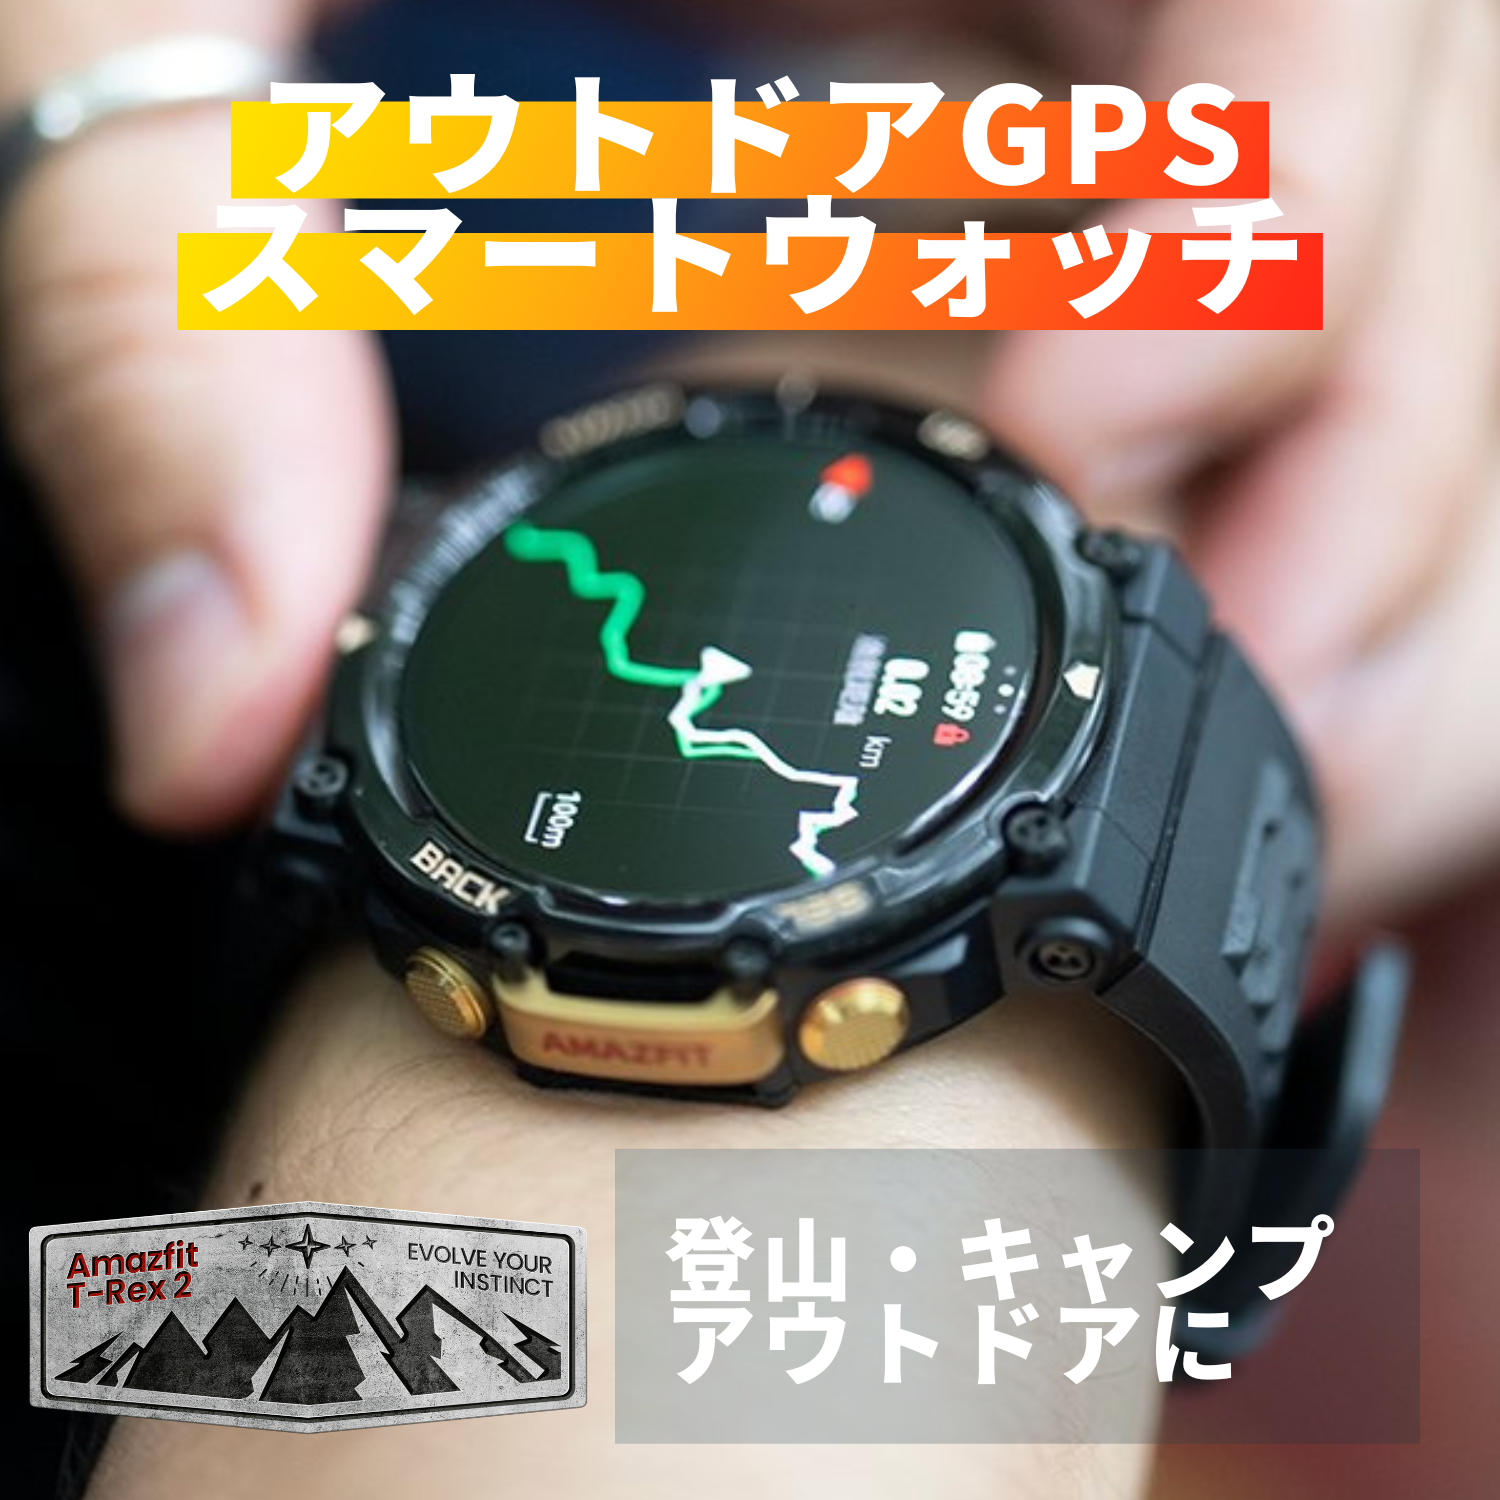 アマズフィット スマートウォッチ T-Rex 2 腕時計